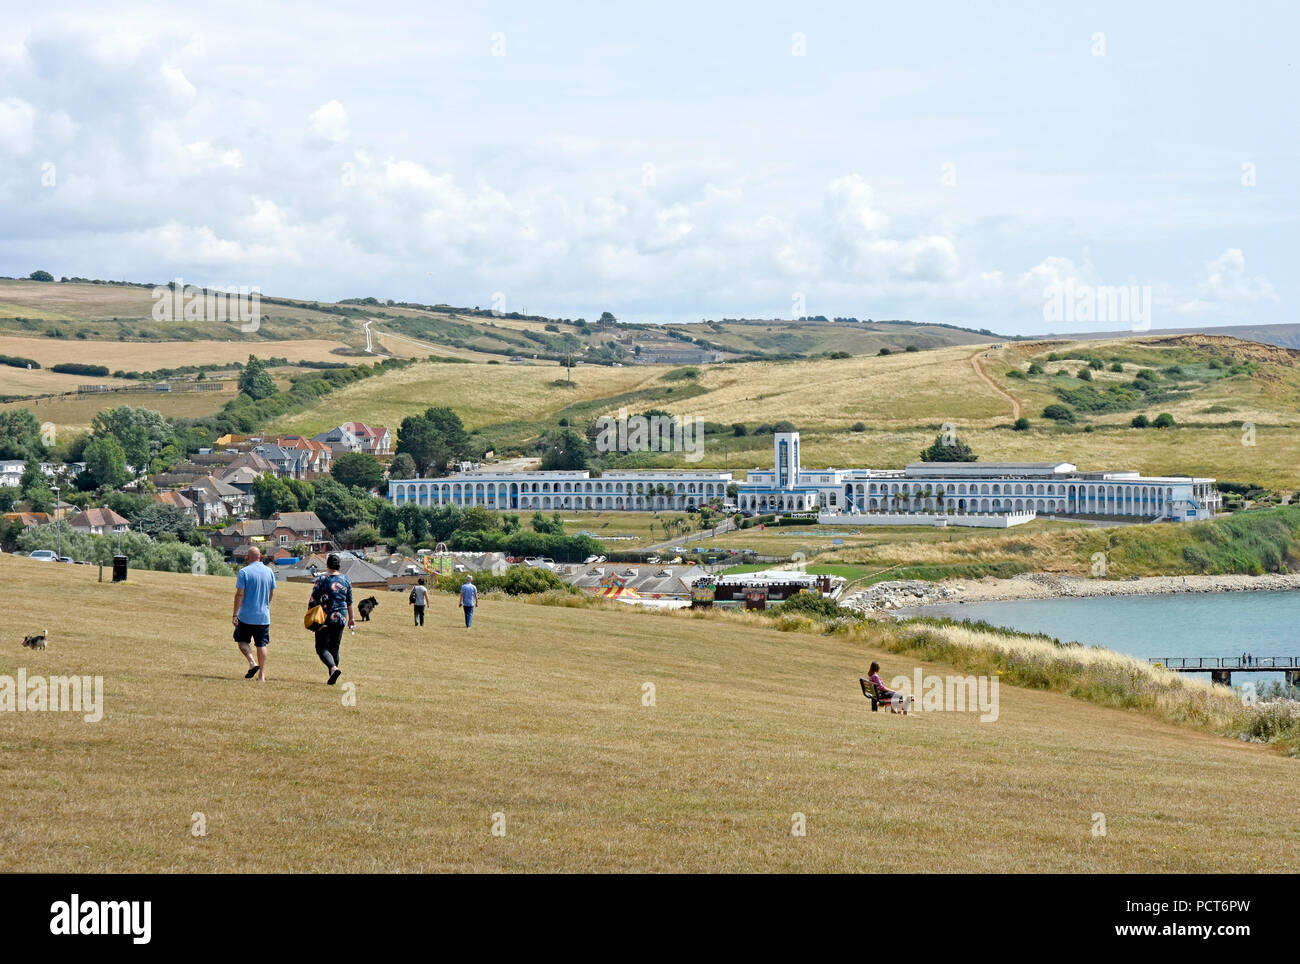 Dorset - Weymouth - Ansicht von Jordan Hill zu Riviera Hotel in Bowleaze Cove - Sommer - Wandern - Hunde spielen Stockfoto